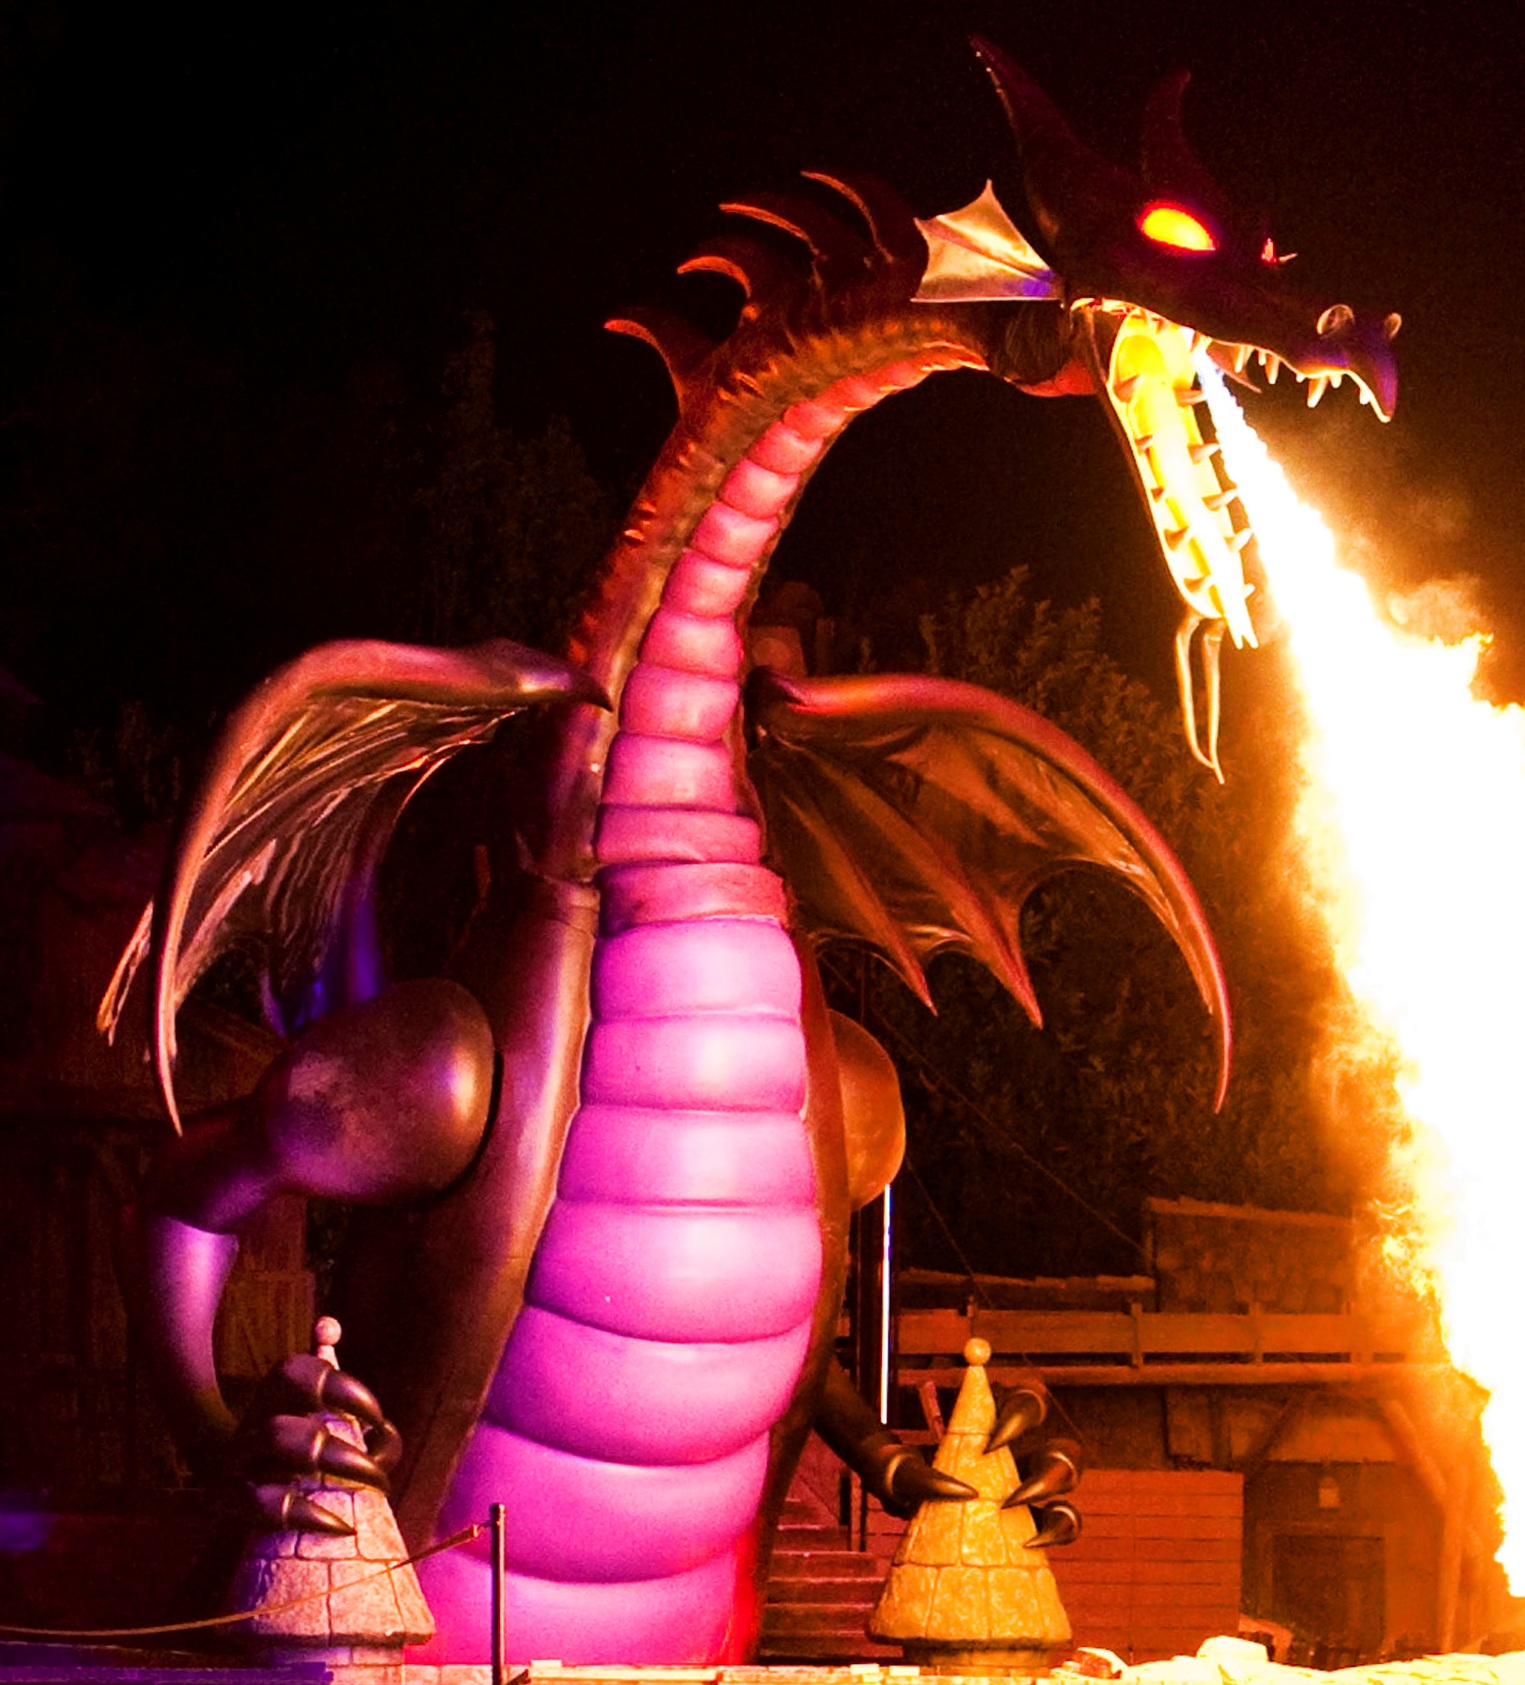 The Disneyland Fantasmic Dragon (Take that WDW!)